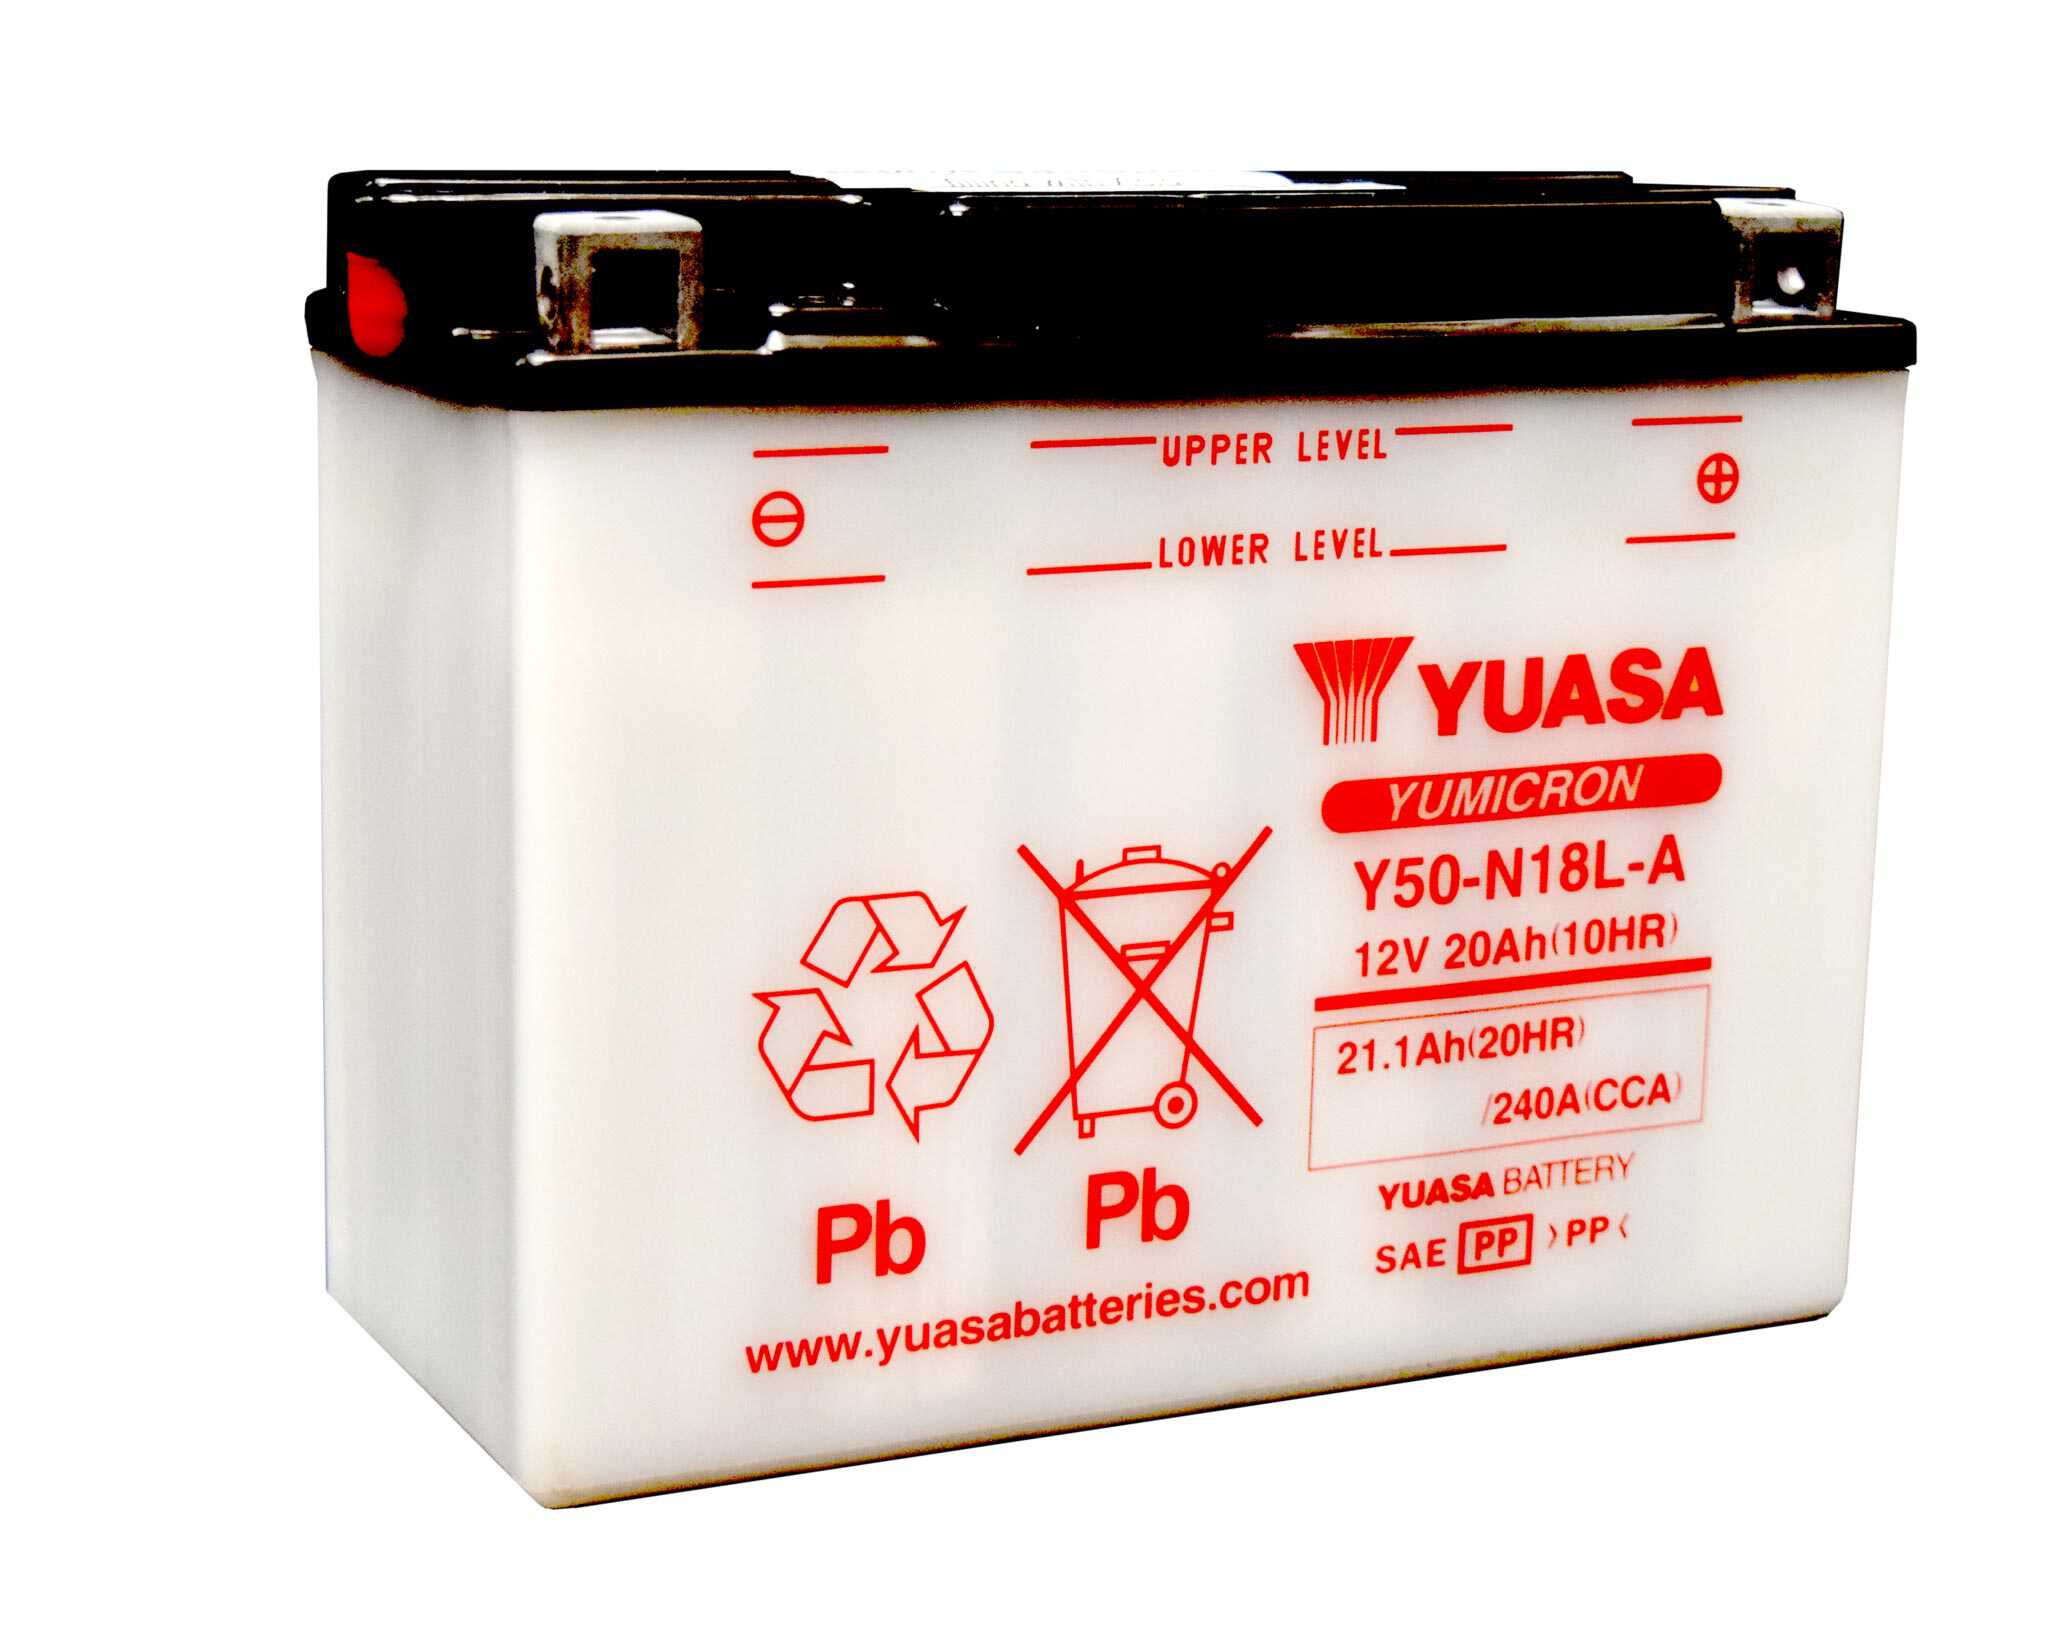 Yuasa Y50-N18L-A battery